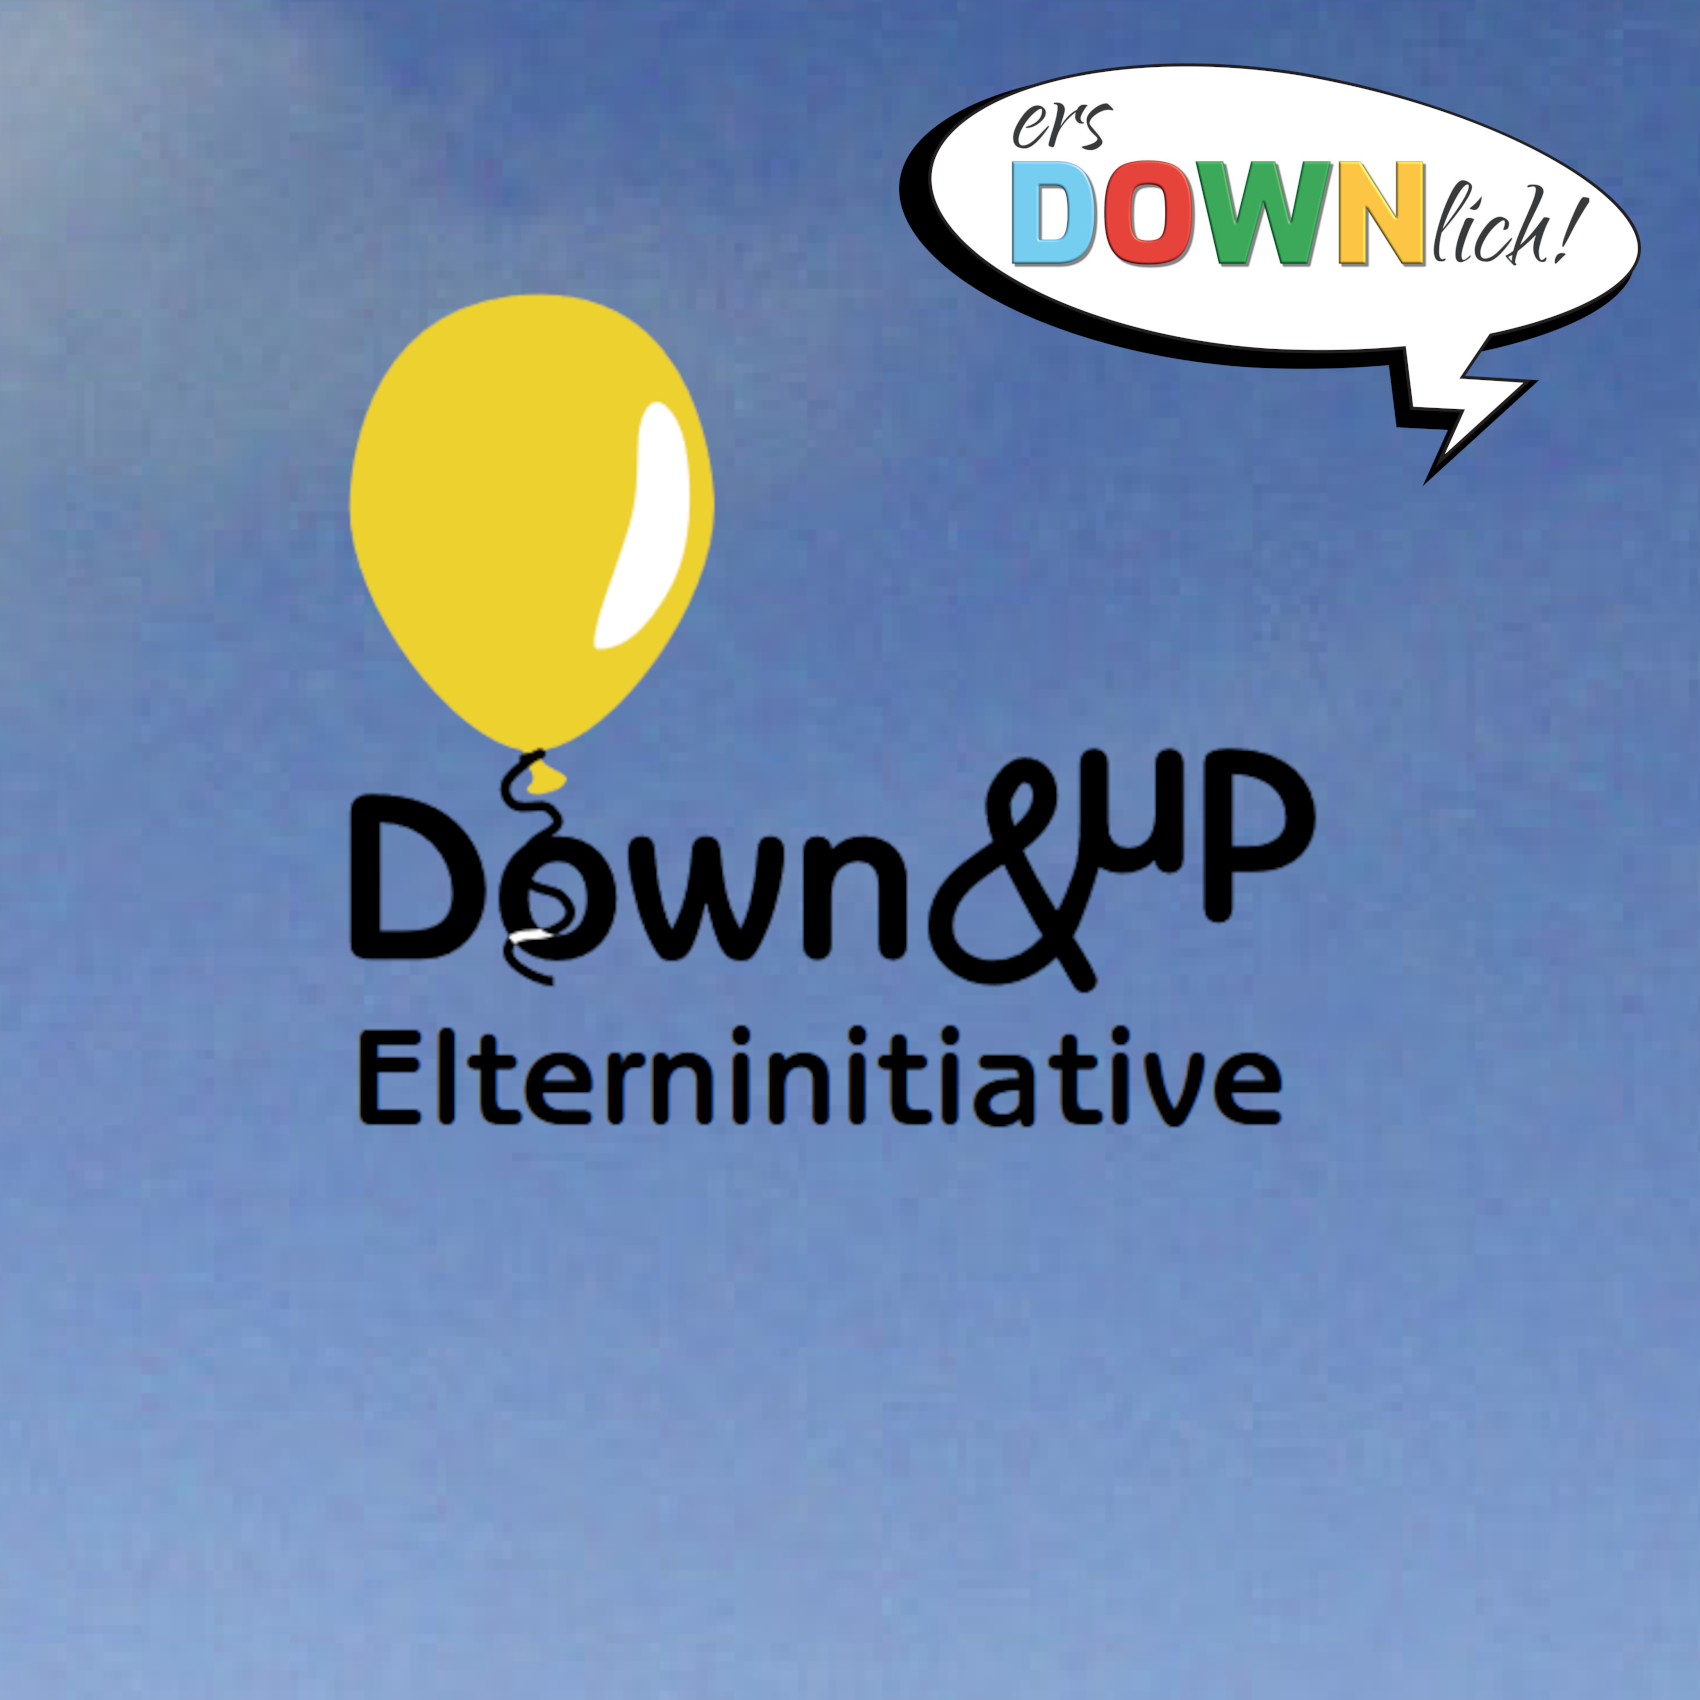 Schwarzer Schriftzug „Down & Up“, darunter „Elterninitiative“. Im Hintergrund ist blauer Himmel. Oberhalb des „Down“ ist ein gelber Luftballon abgebildet. Rechts oben ist eine Sprechblase mit dem Logo von ersDOWNlich!